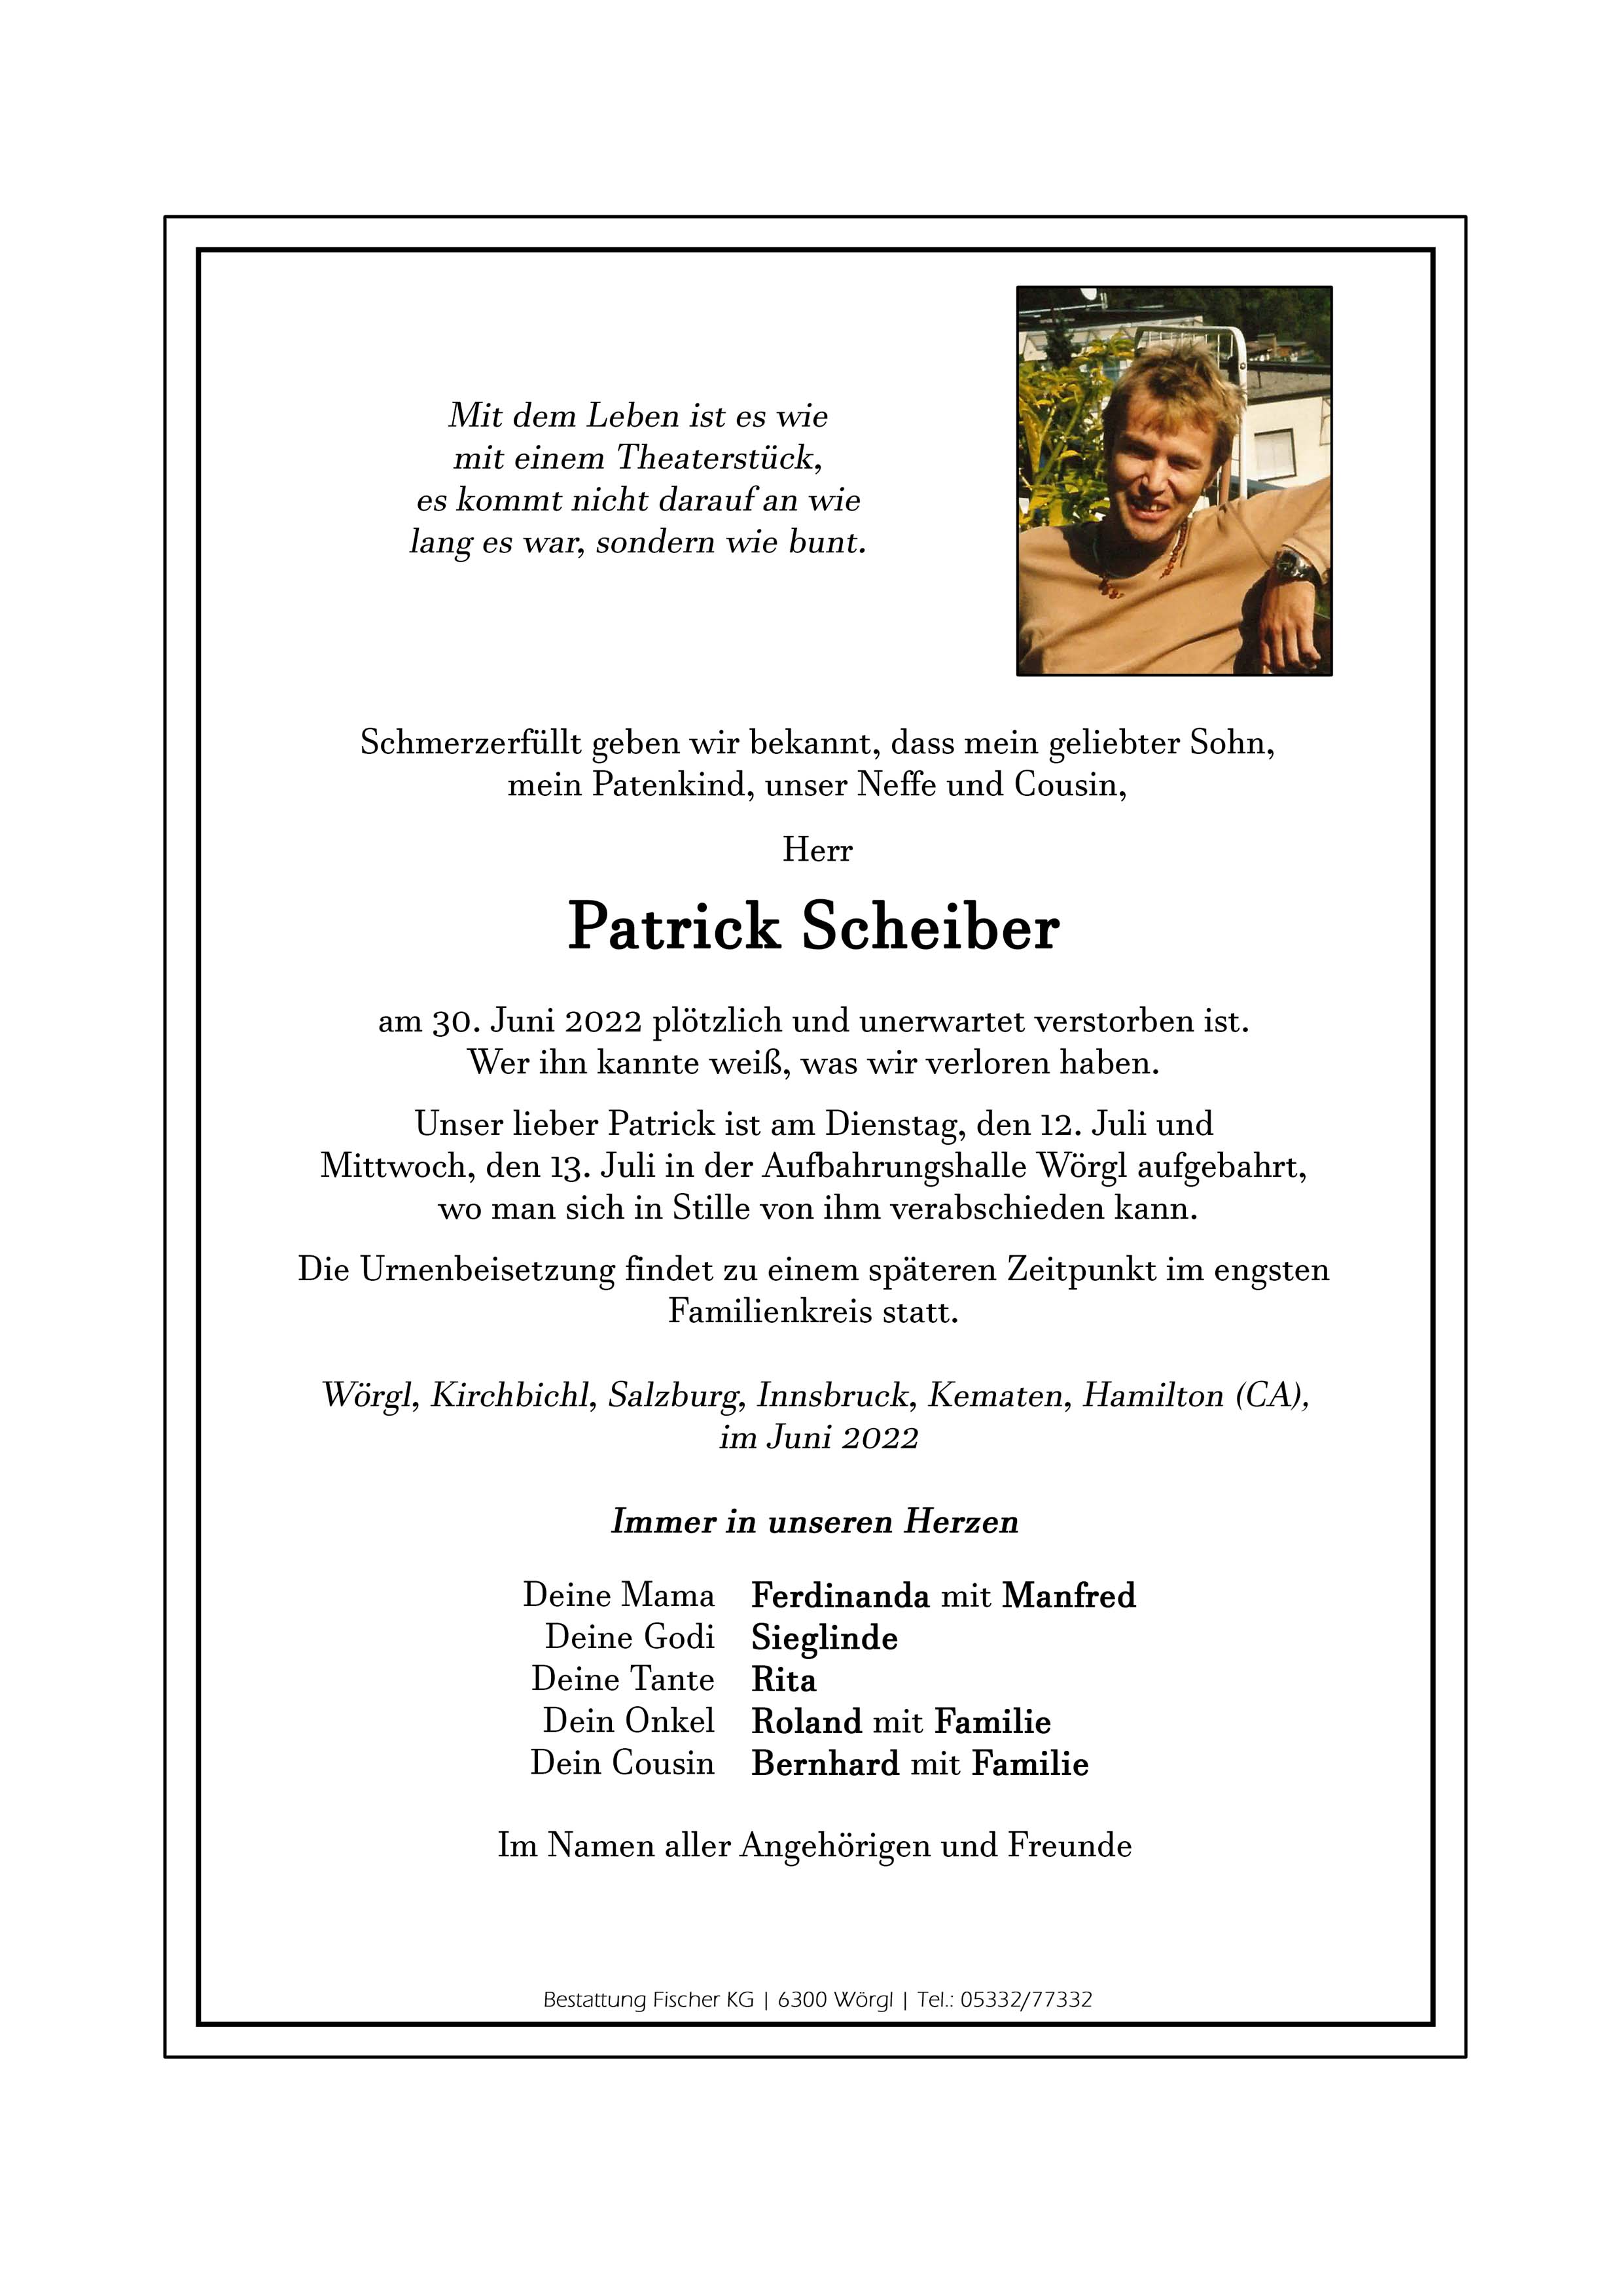 Patrick Scheiber